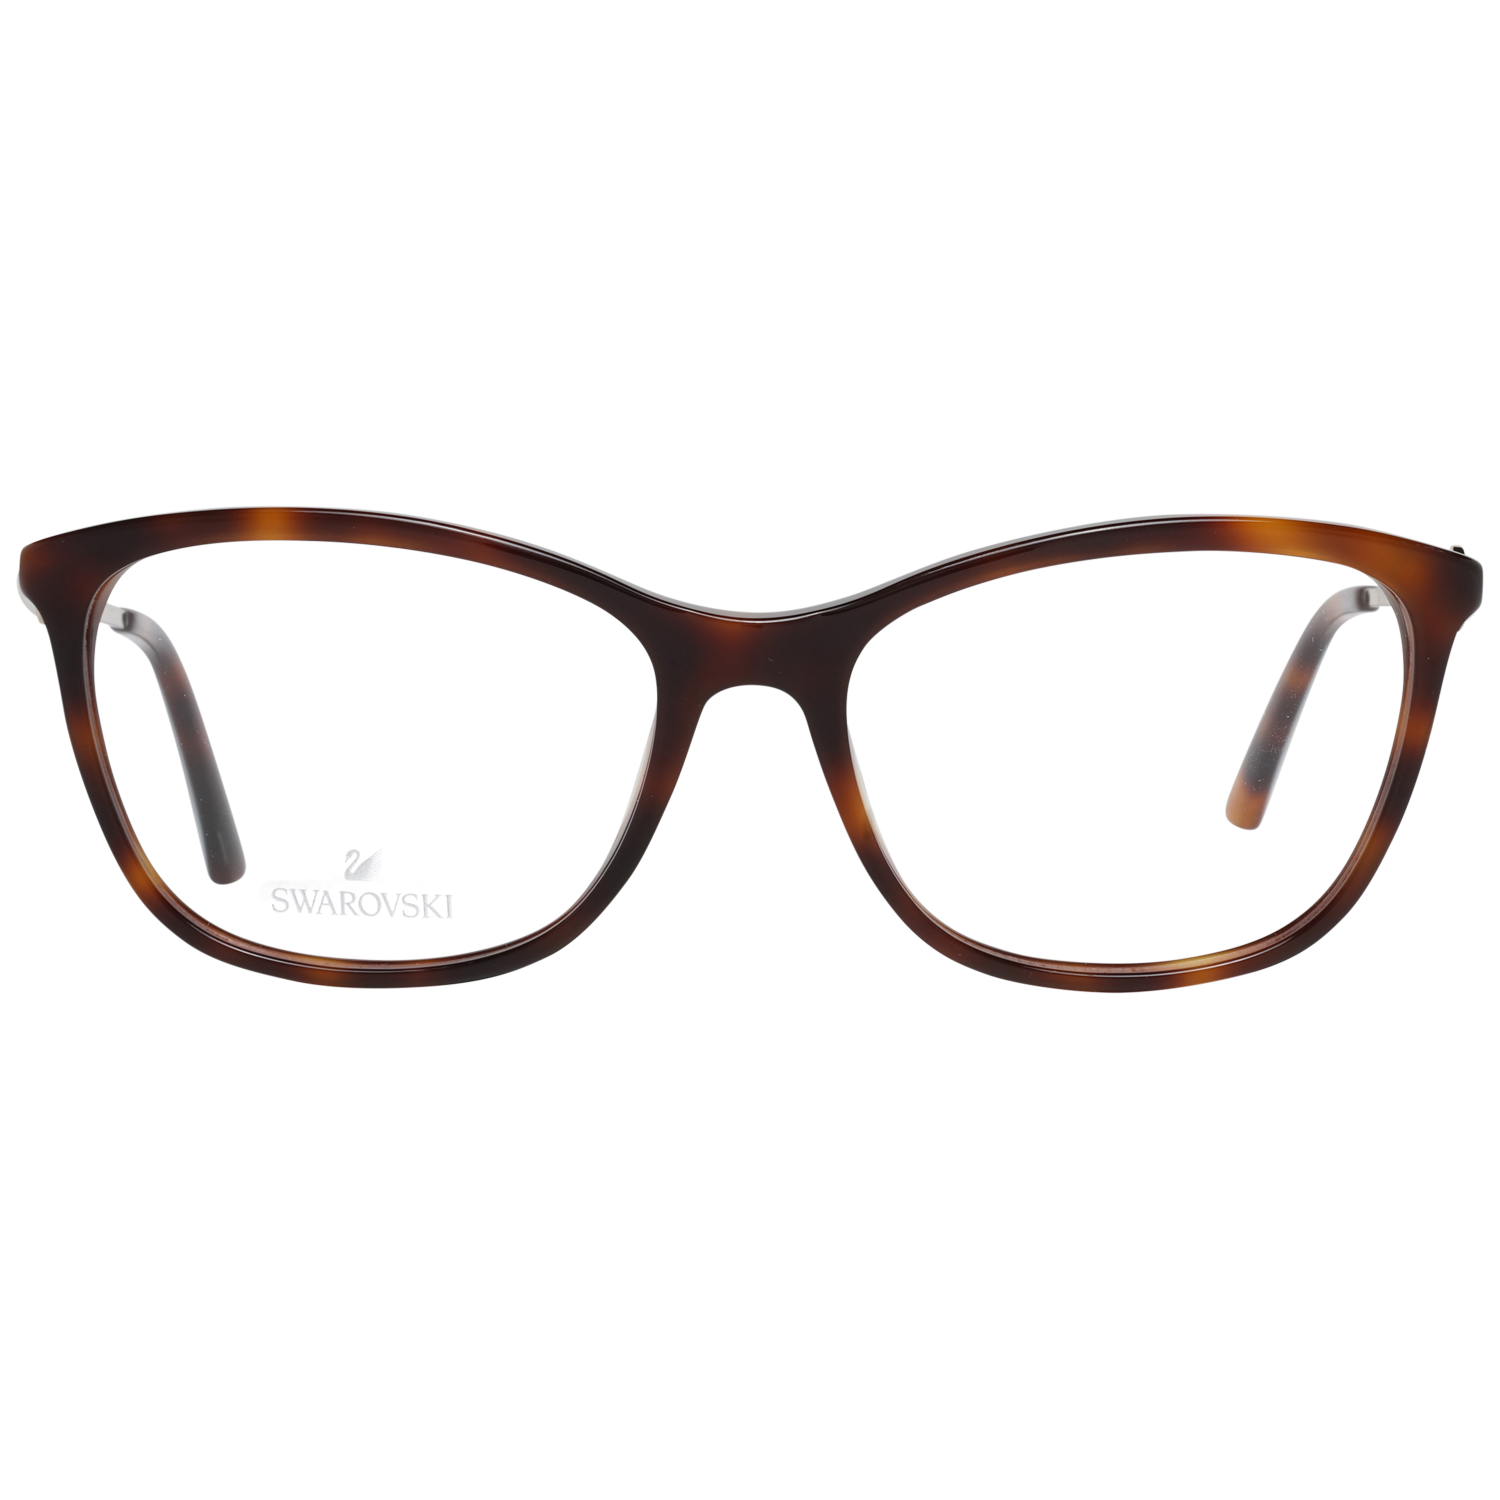 Swarovski Frames Swarovski Women Glasses Optical Frame SK5276 052 54 Eyeglasses Eyewear UK USA Australia 